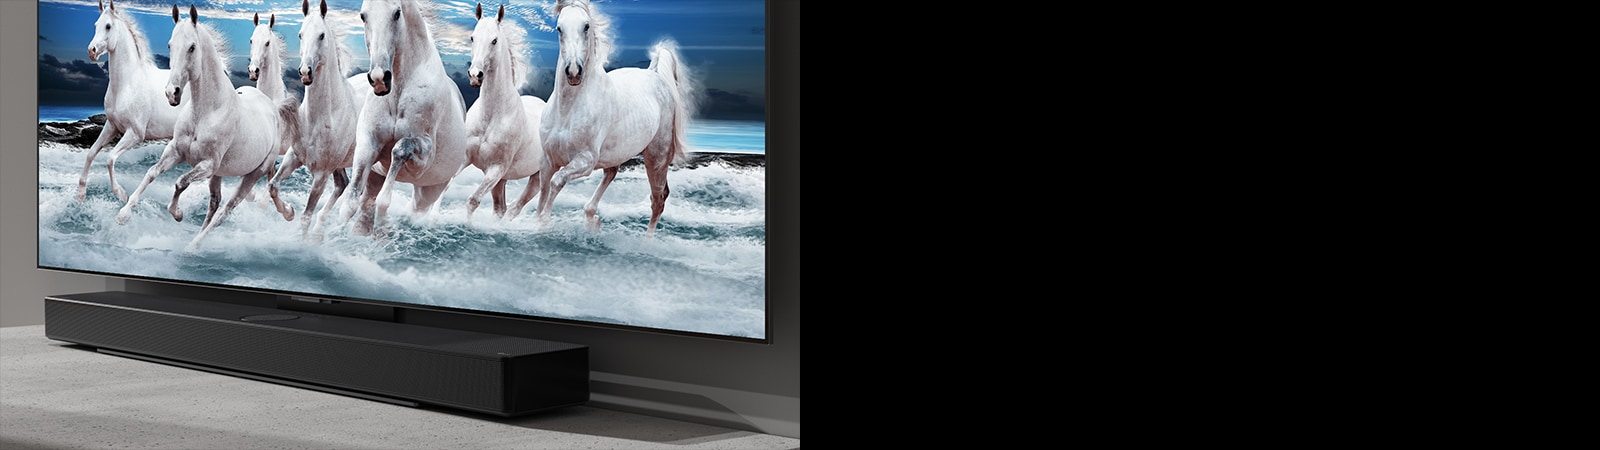 La barra de sonido y el televisor están sobre la mesa blanca y se muestran 7 caballos blancos en el televisor.